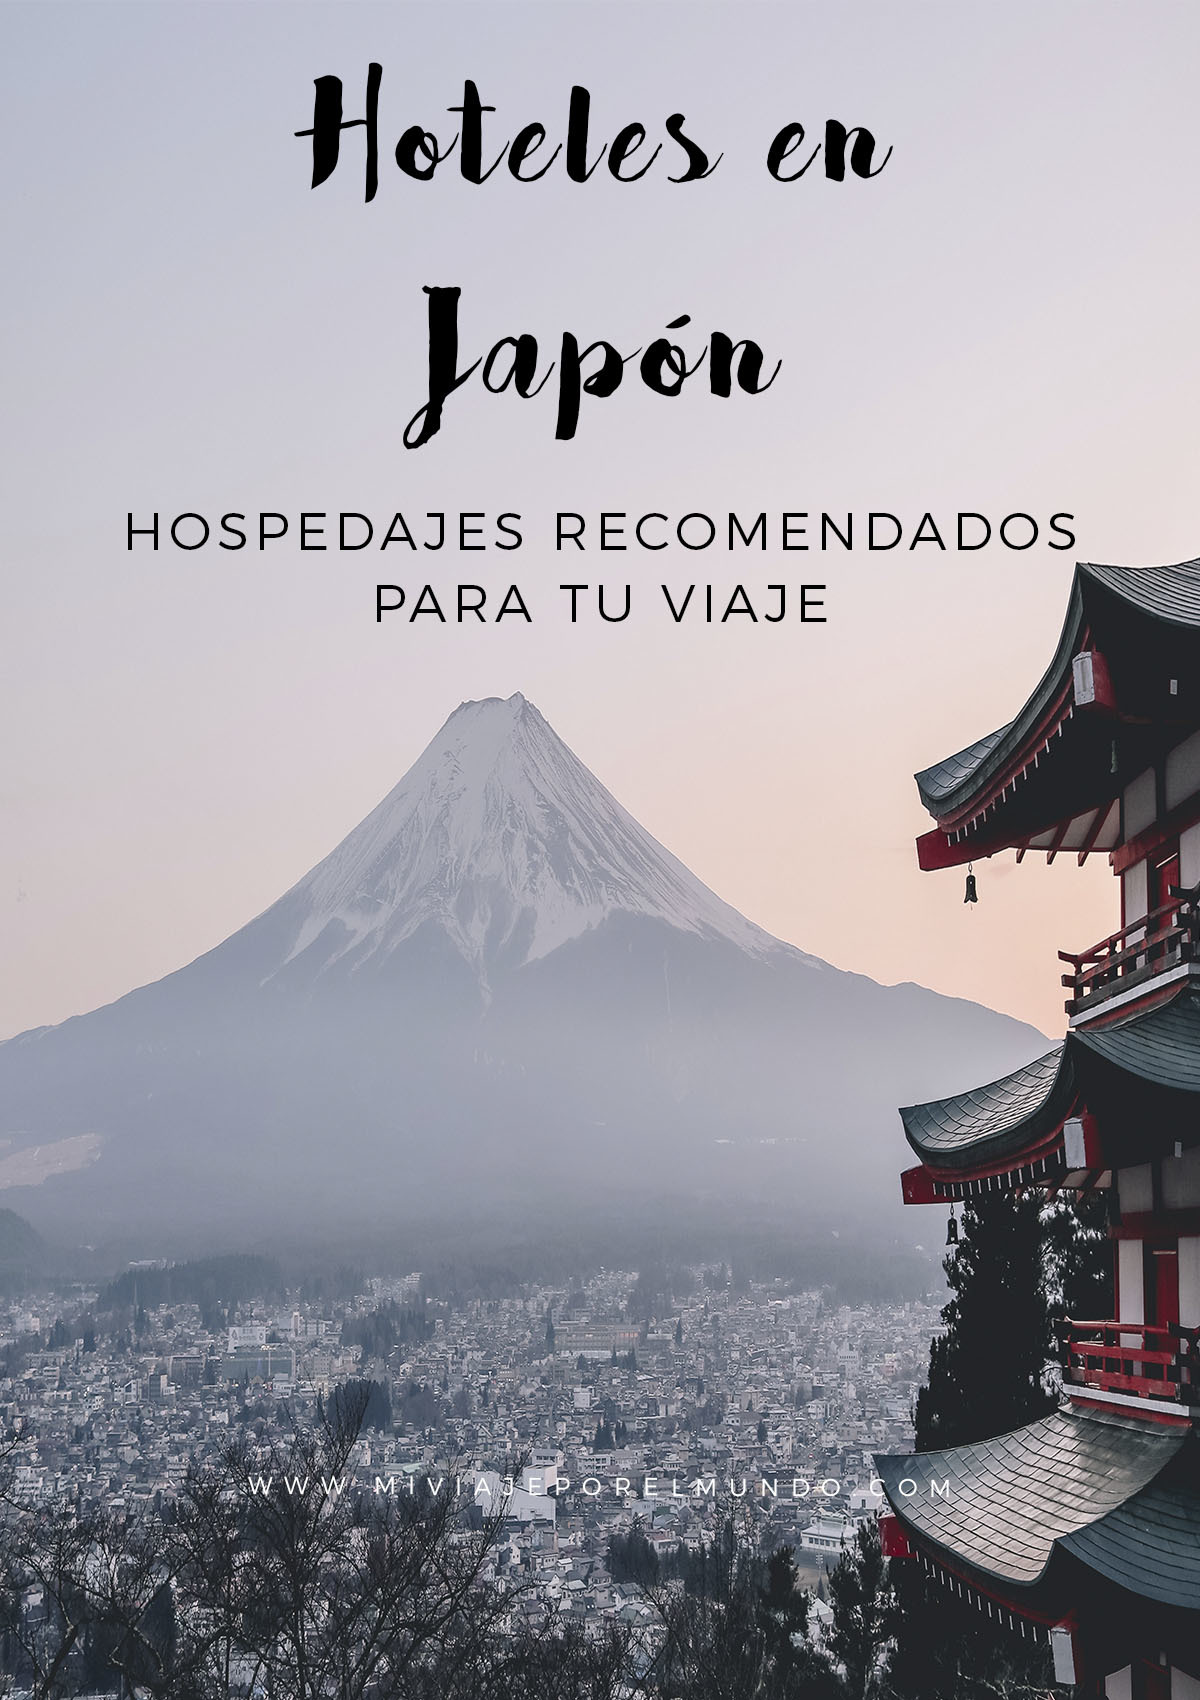 hoteles recomendados en japon